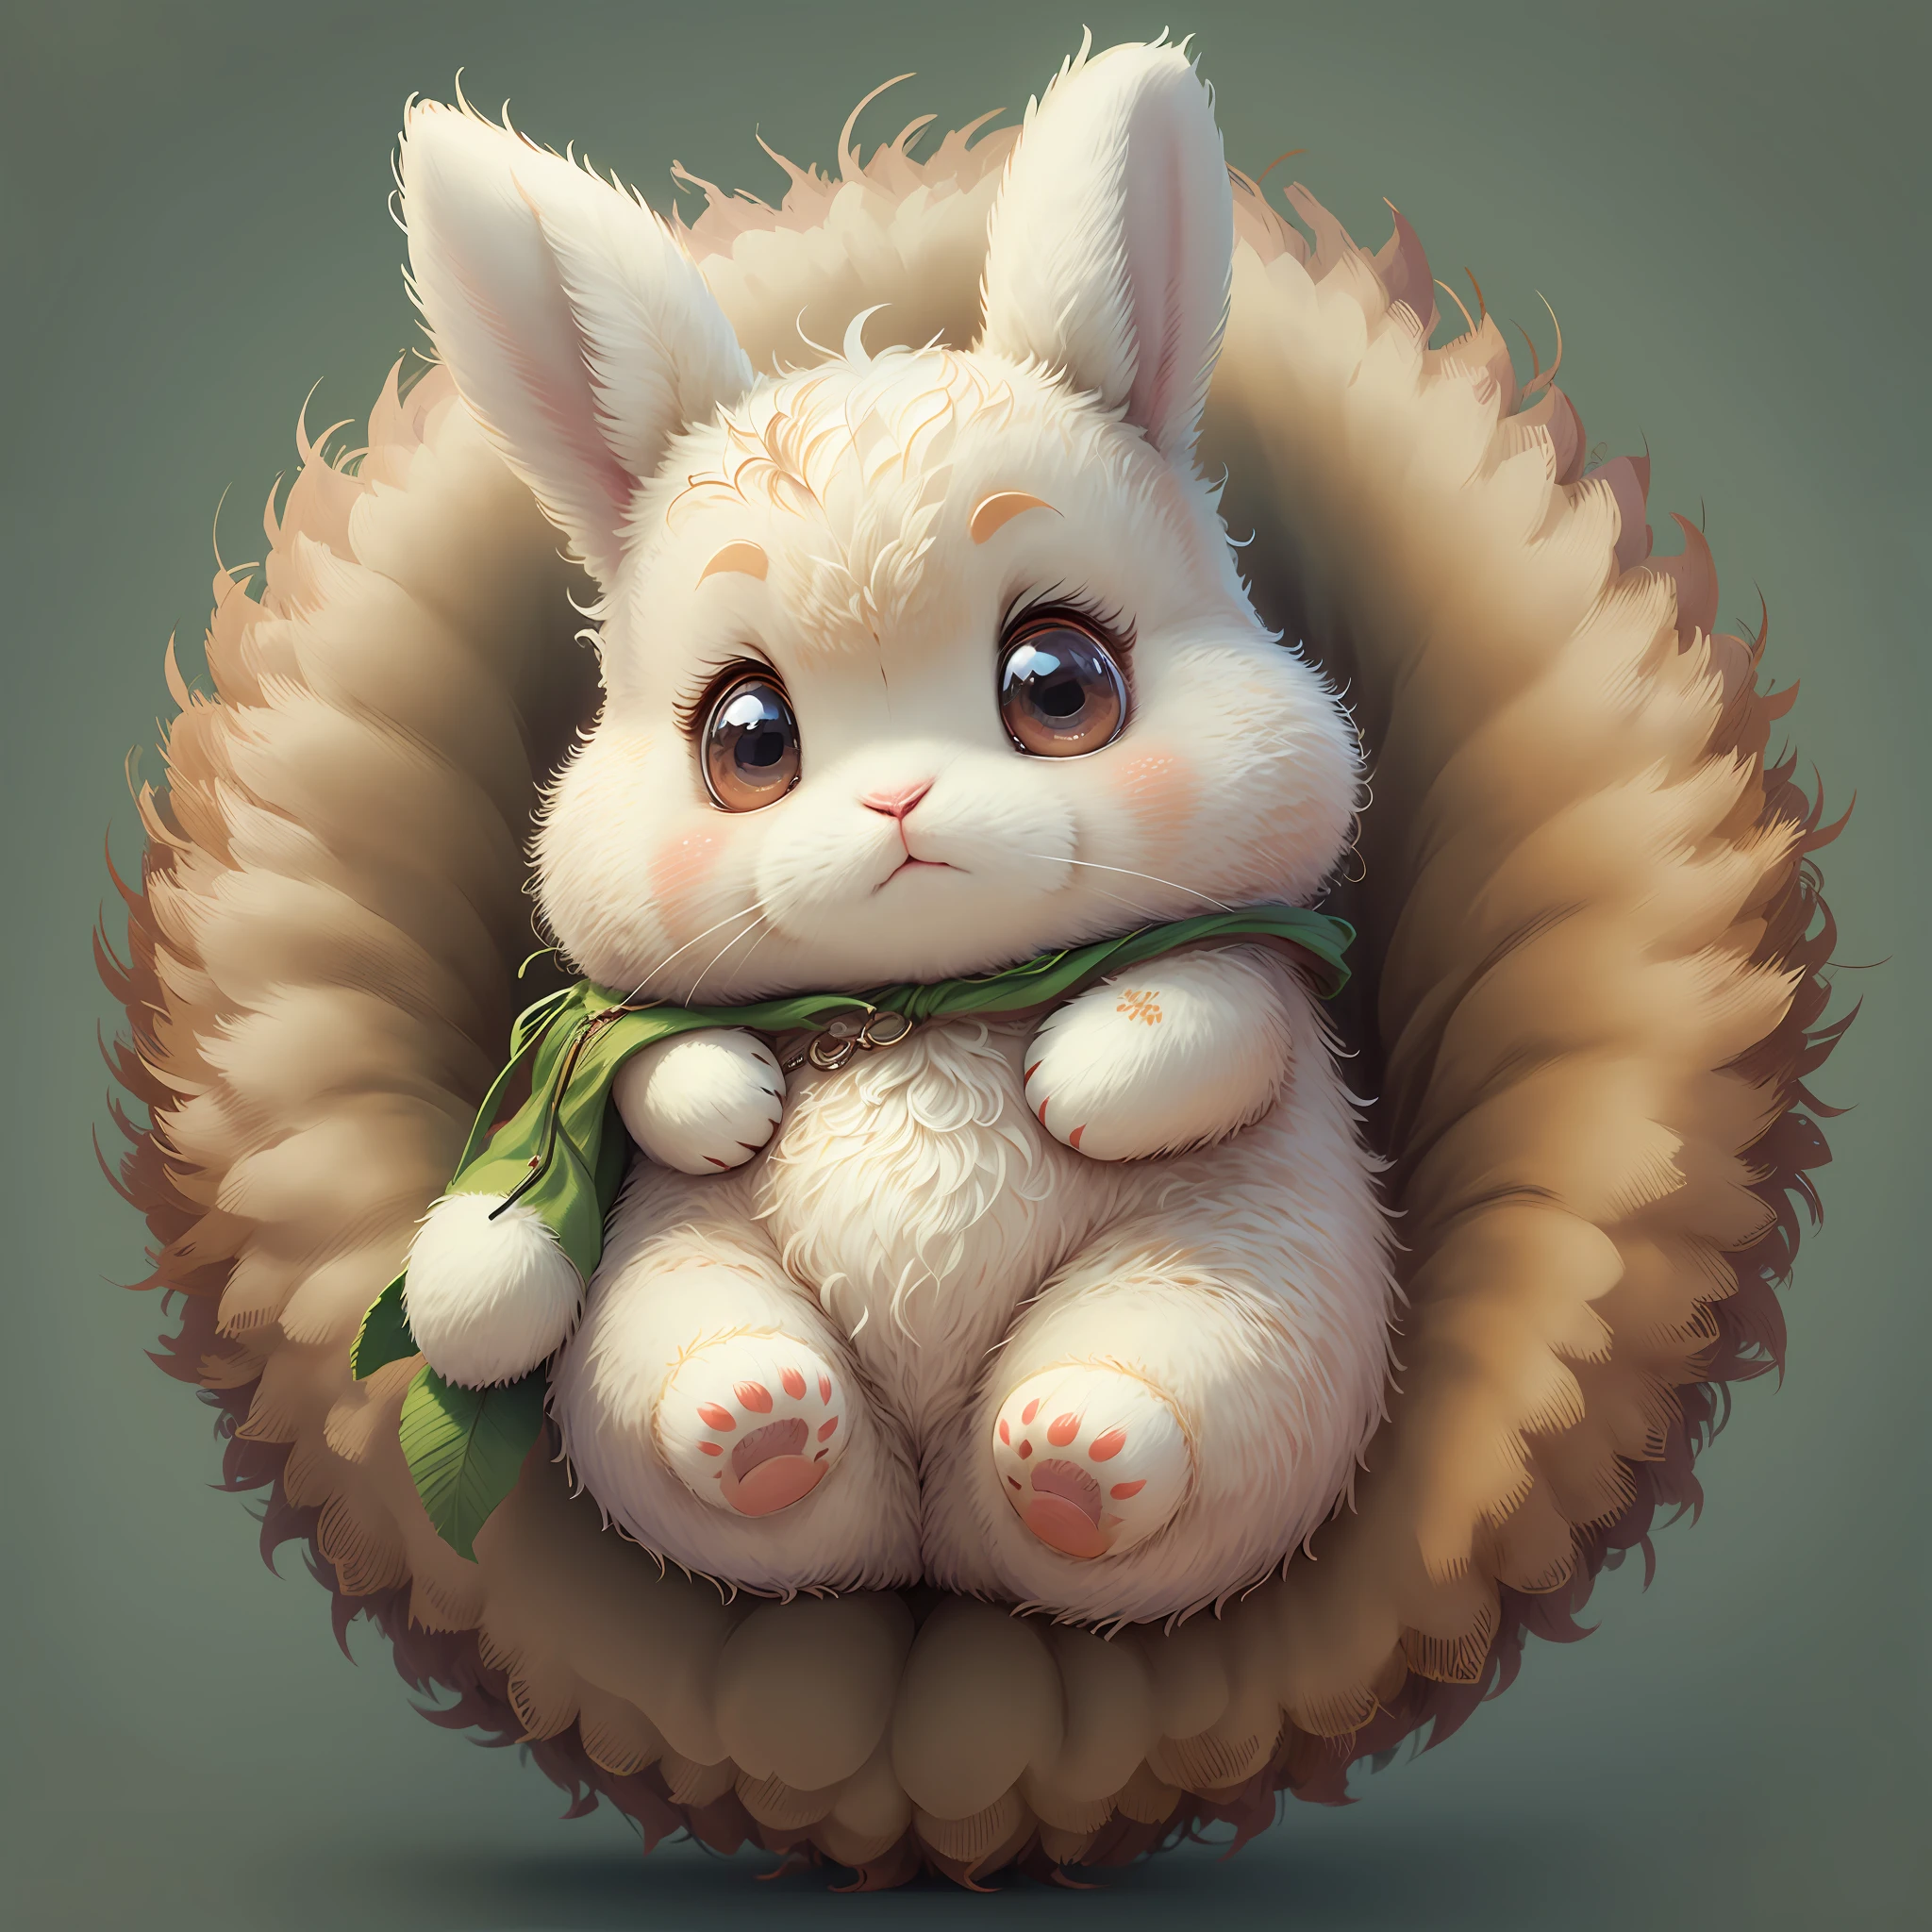 Dibuja un lindo y abrazable personaje de conejo inspirado en las ilustraciones de "Inai Inai Baa." Dale un esponjoso, cuerpo redondo y ojos suaves, sosteniendo un juguete de peluche con fuerza en sus patas. (--pronto "Incorporando las ilustraciones de 'Inai Inai Baa,' Genera un personaje de conejo lindo y abrazable con un esponjoso, cuerpo redondo y ojos suaves, sosteniendo un juguete de peluche con fuerza en sus patas.")